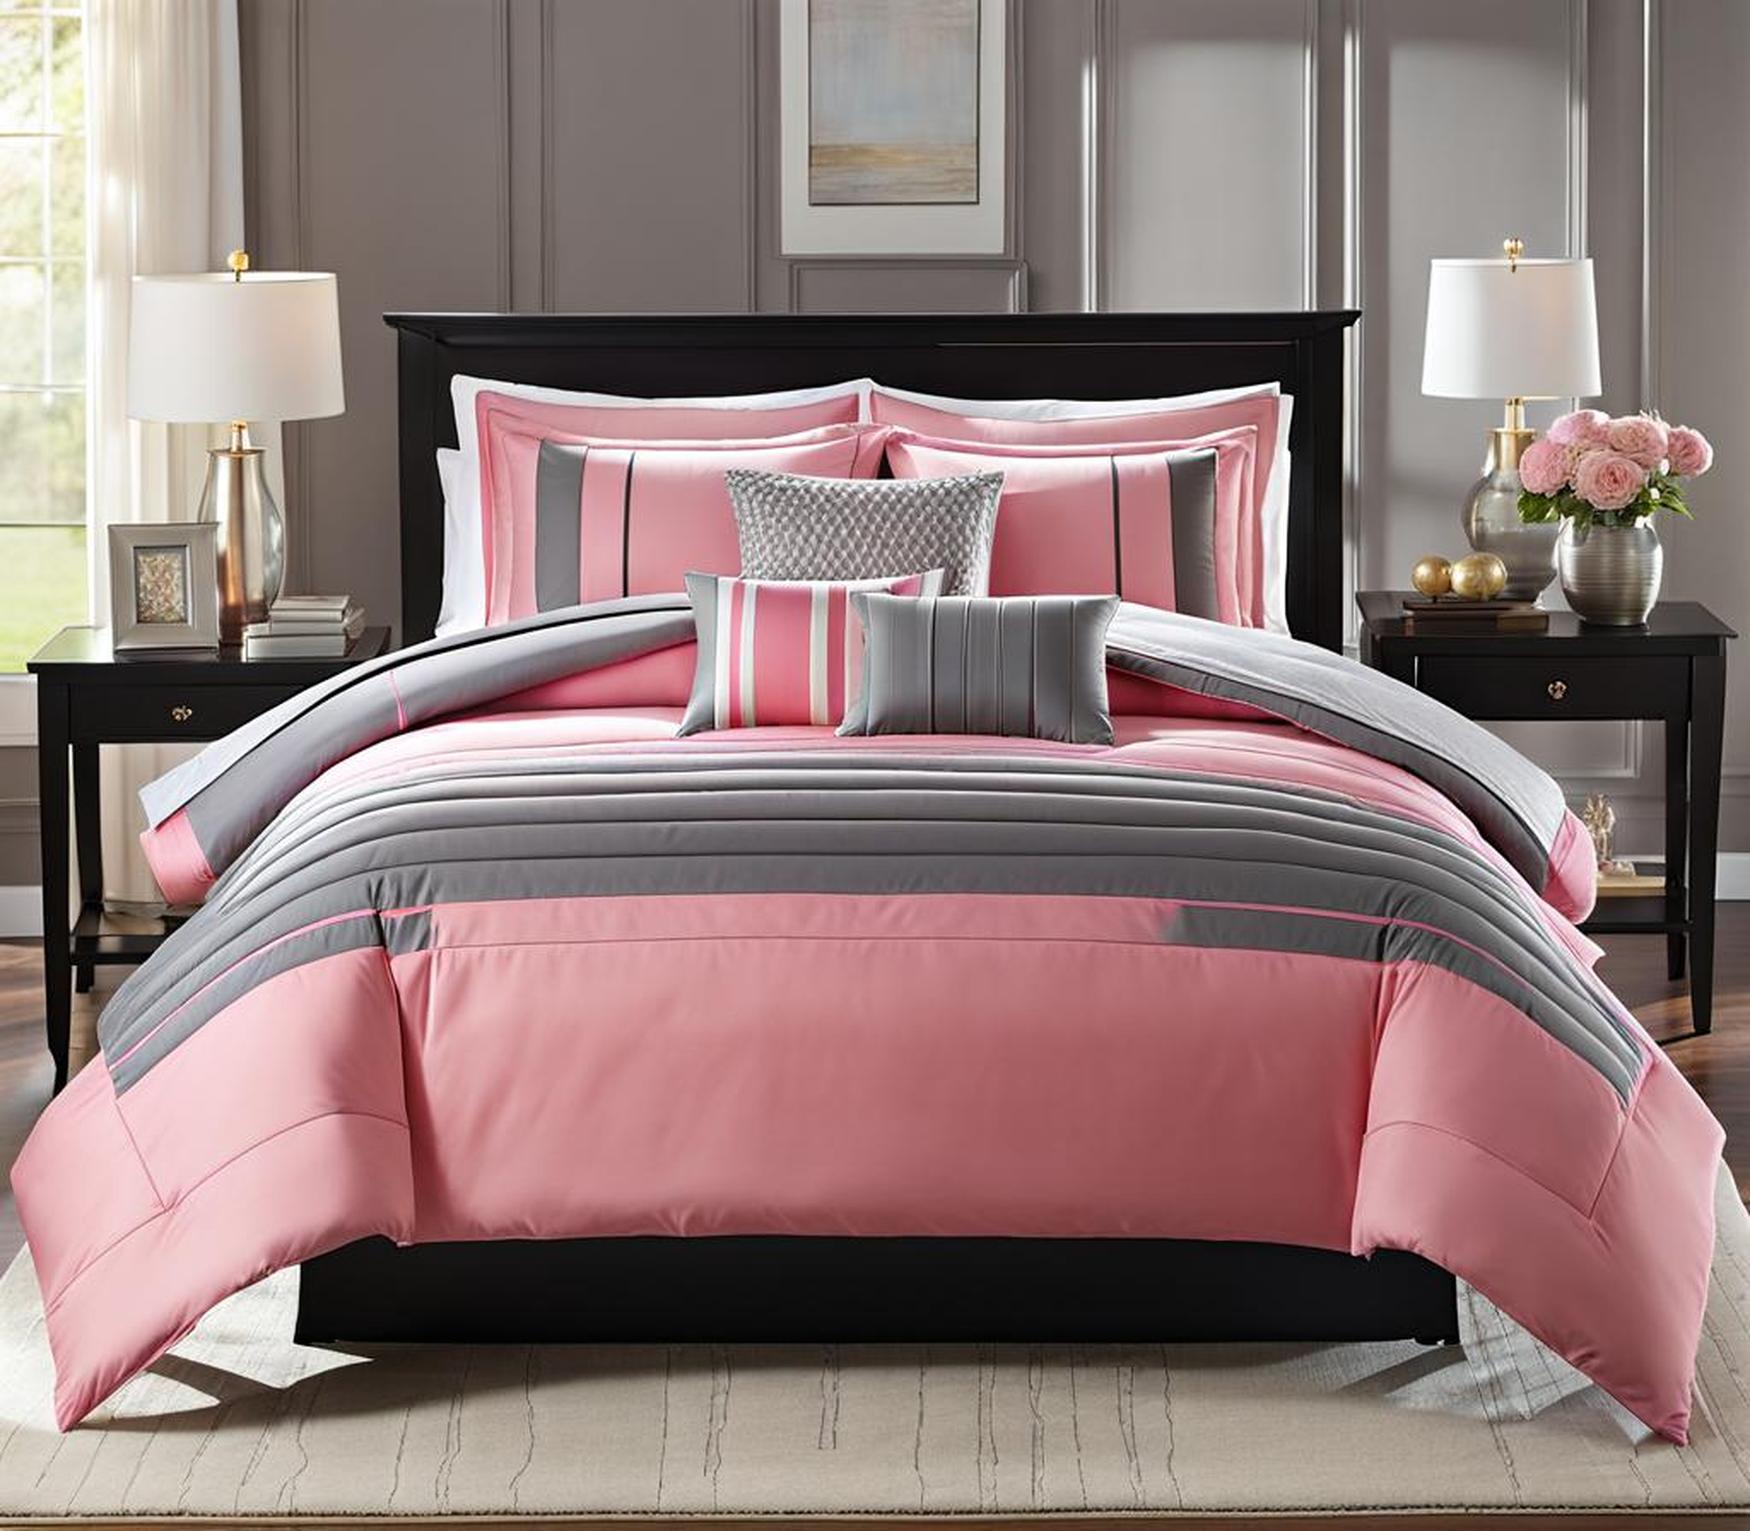 pink and grey comforter set queen